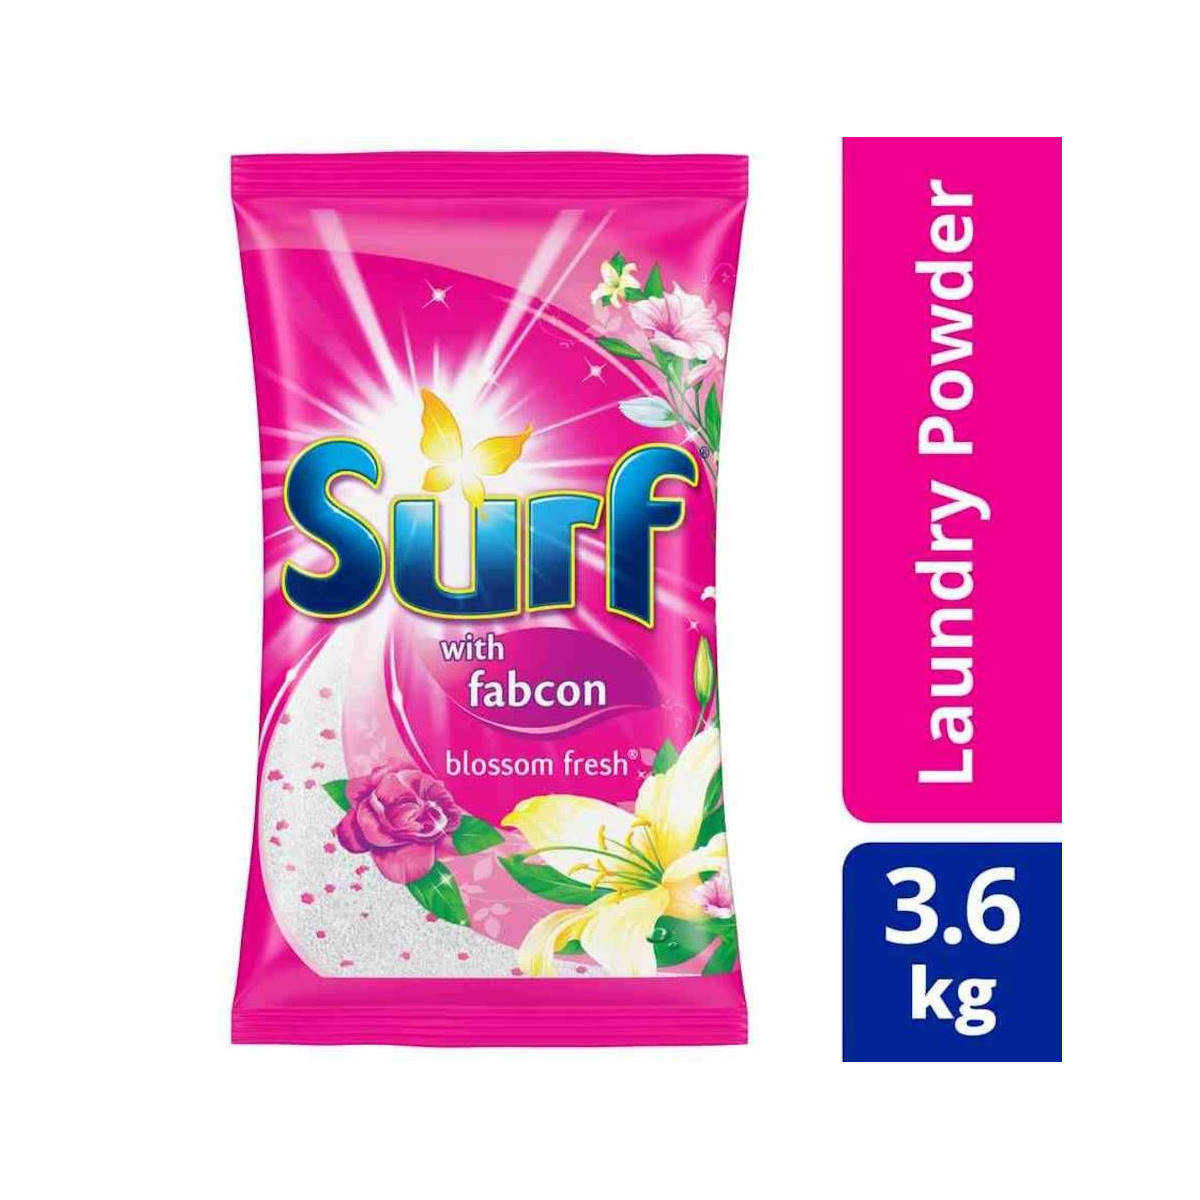 Surf Powder Detergent Blossom Fresh 3.6KG Pouch